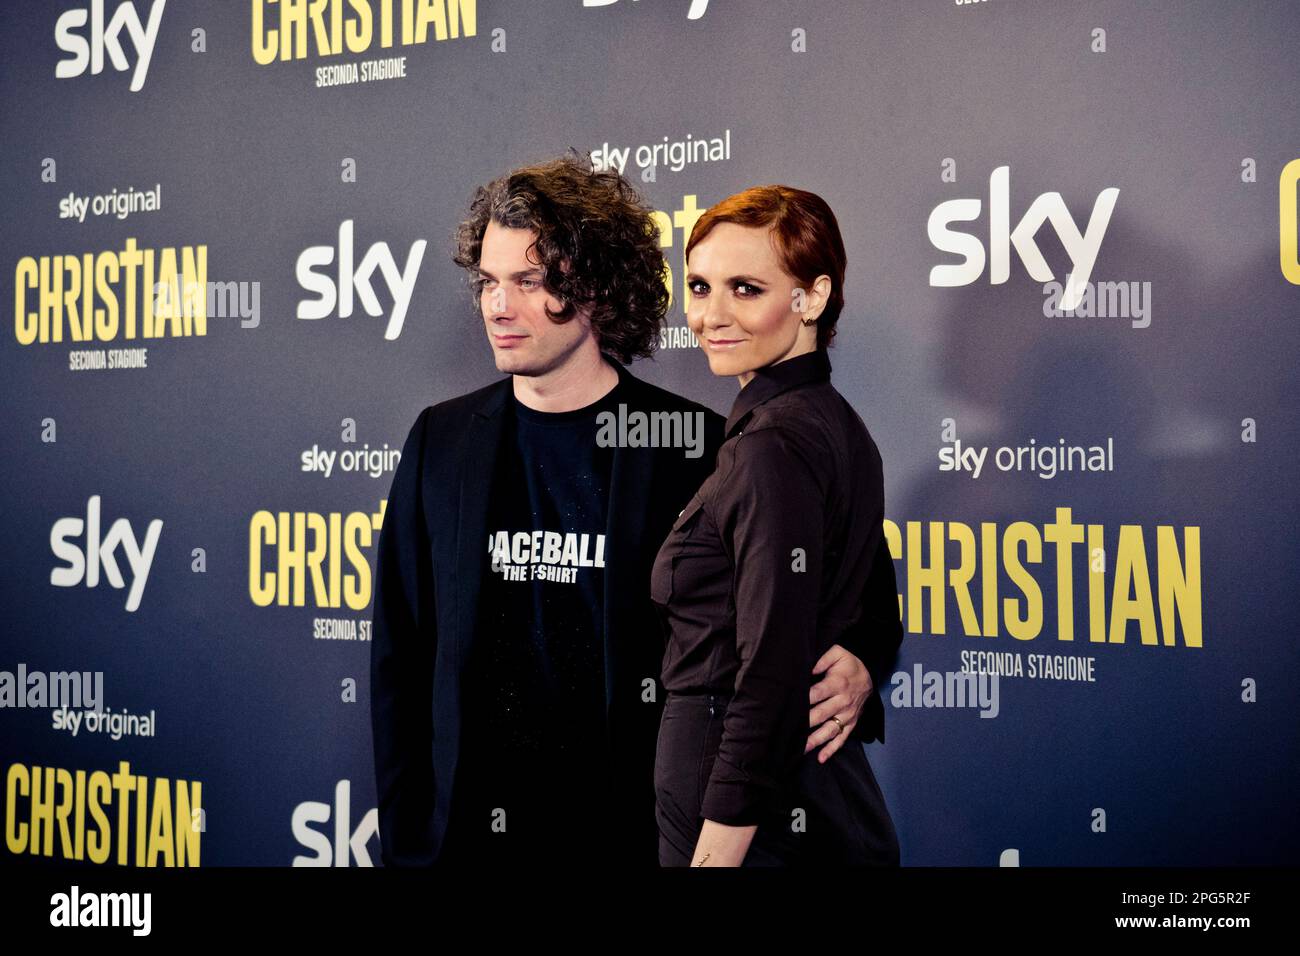 Rome, Italy, 20th March 2023, Camilla Filippi & Stefano Lodovichi attends the premiere of 'Christian - seconda stagione' at Cinema Barberini (Photo cr Stock Photo